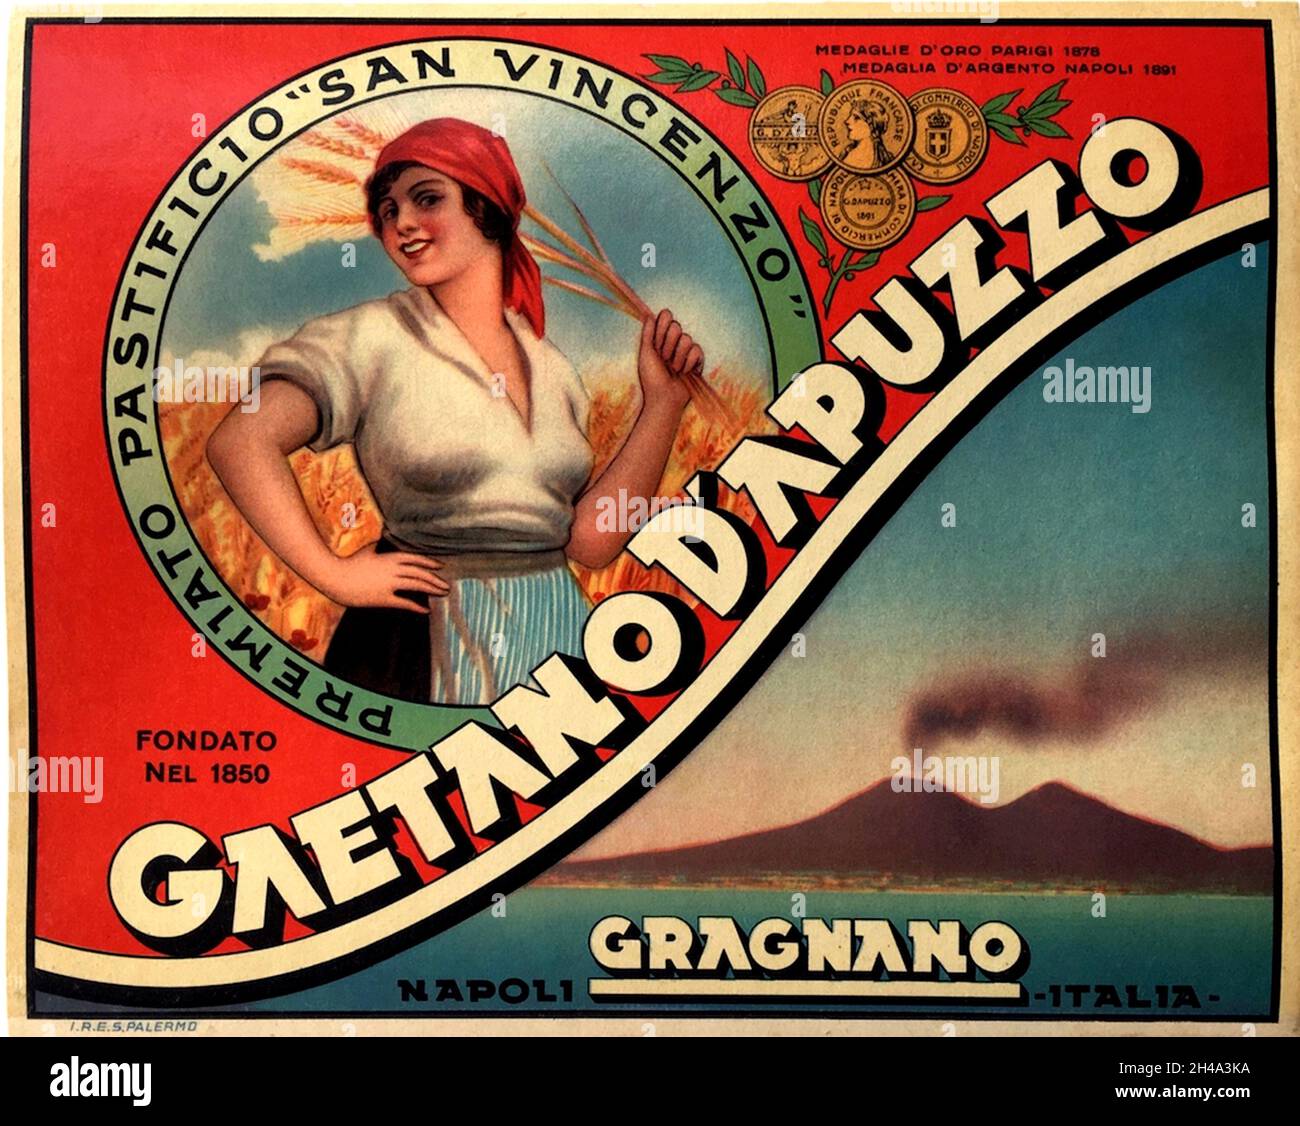 1925 ca , ITALIA : Poster pubblicitario Italiano per LA PASTA GAETANO D'APUZZO , di Gragnano ( Napoli ), Poster pubblicitario. Opera di un pittore sconosciuto. - Pubblicità - illustrazione - illustrazione - ANNI CINQUANTA - anni '50 - '50 - Pubblicità - annuncio pubblico - reclame - advertise - poster - industria - industria alimentare - ALIMENTO - ALIMENTI - ITALIA - INDUSTRIA - FABBRICA - cibo - alimentari ----- Archivio GBB Foto Stock